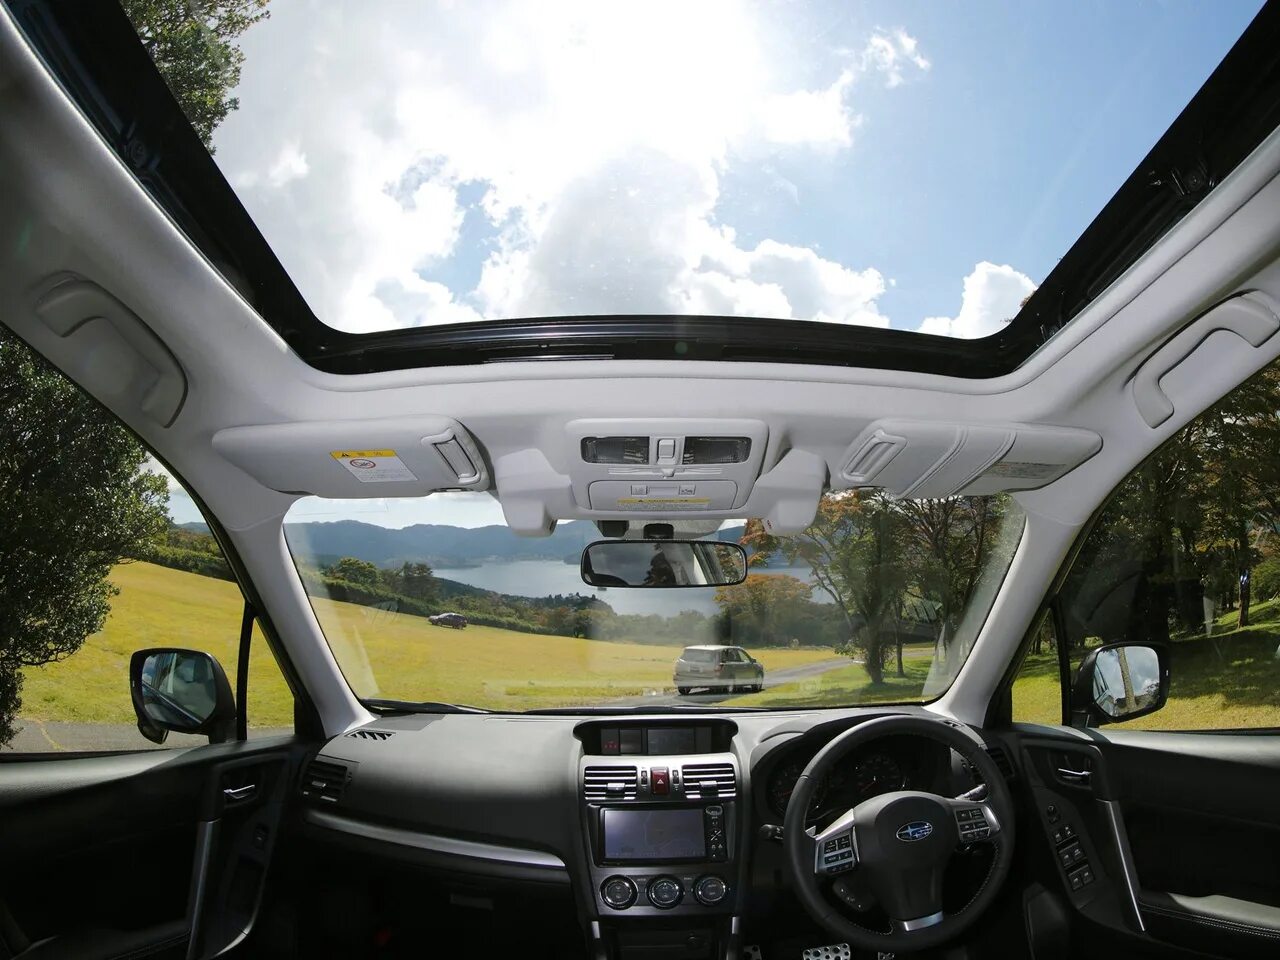 Люк форестер. Субару Форестер с панорамной крышей. Форестер sg5 с панорамной крышей. Subaru Forester Panoramic sunroof. Субару Форестер 2006 года с панорамной крышей.